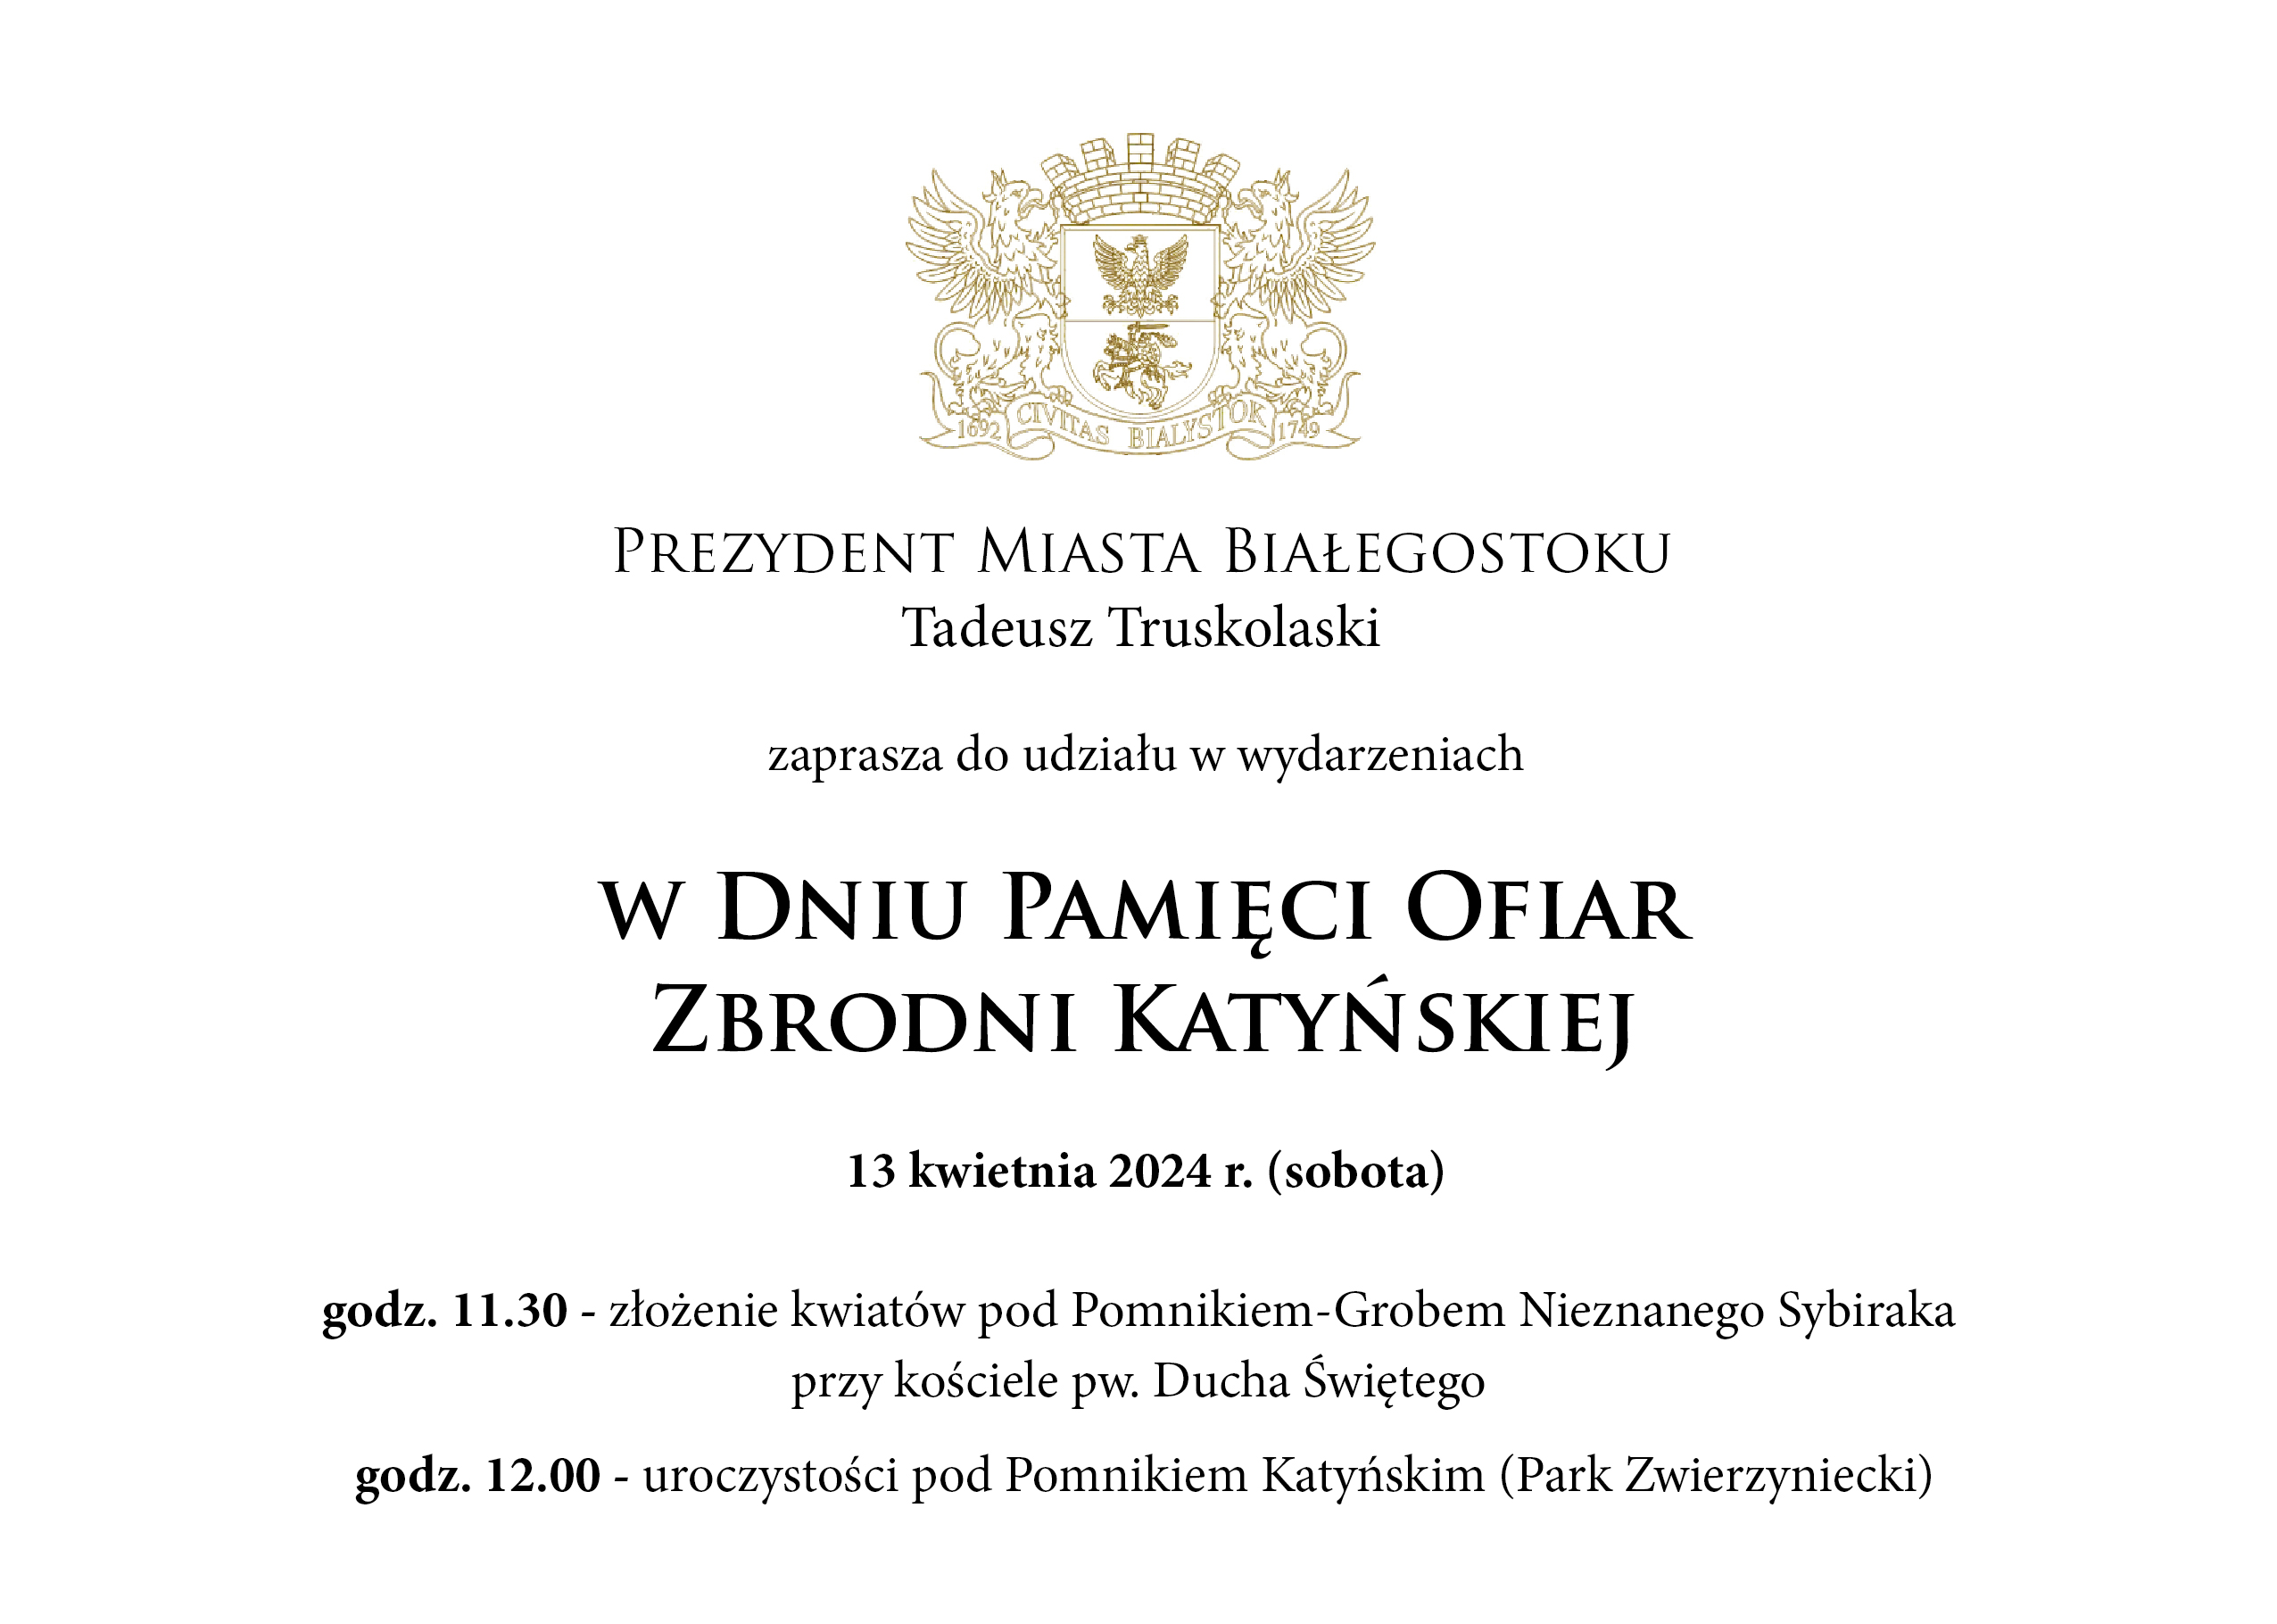 Grafika: Prezydent Miasta Białegostoku zaprasza do udziału wydarzeniach w dniu pamięci ofiar zbrodni Katyńskiej. Odbędą się one 13 kwietnia 2024 roku